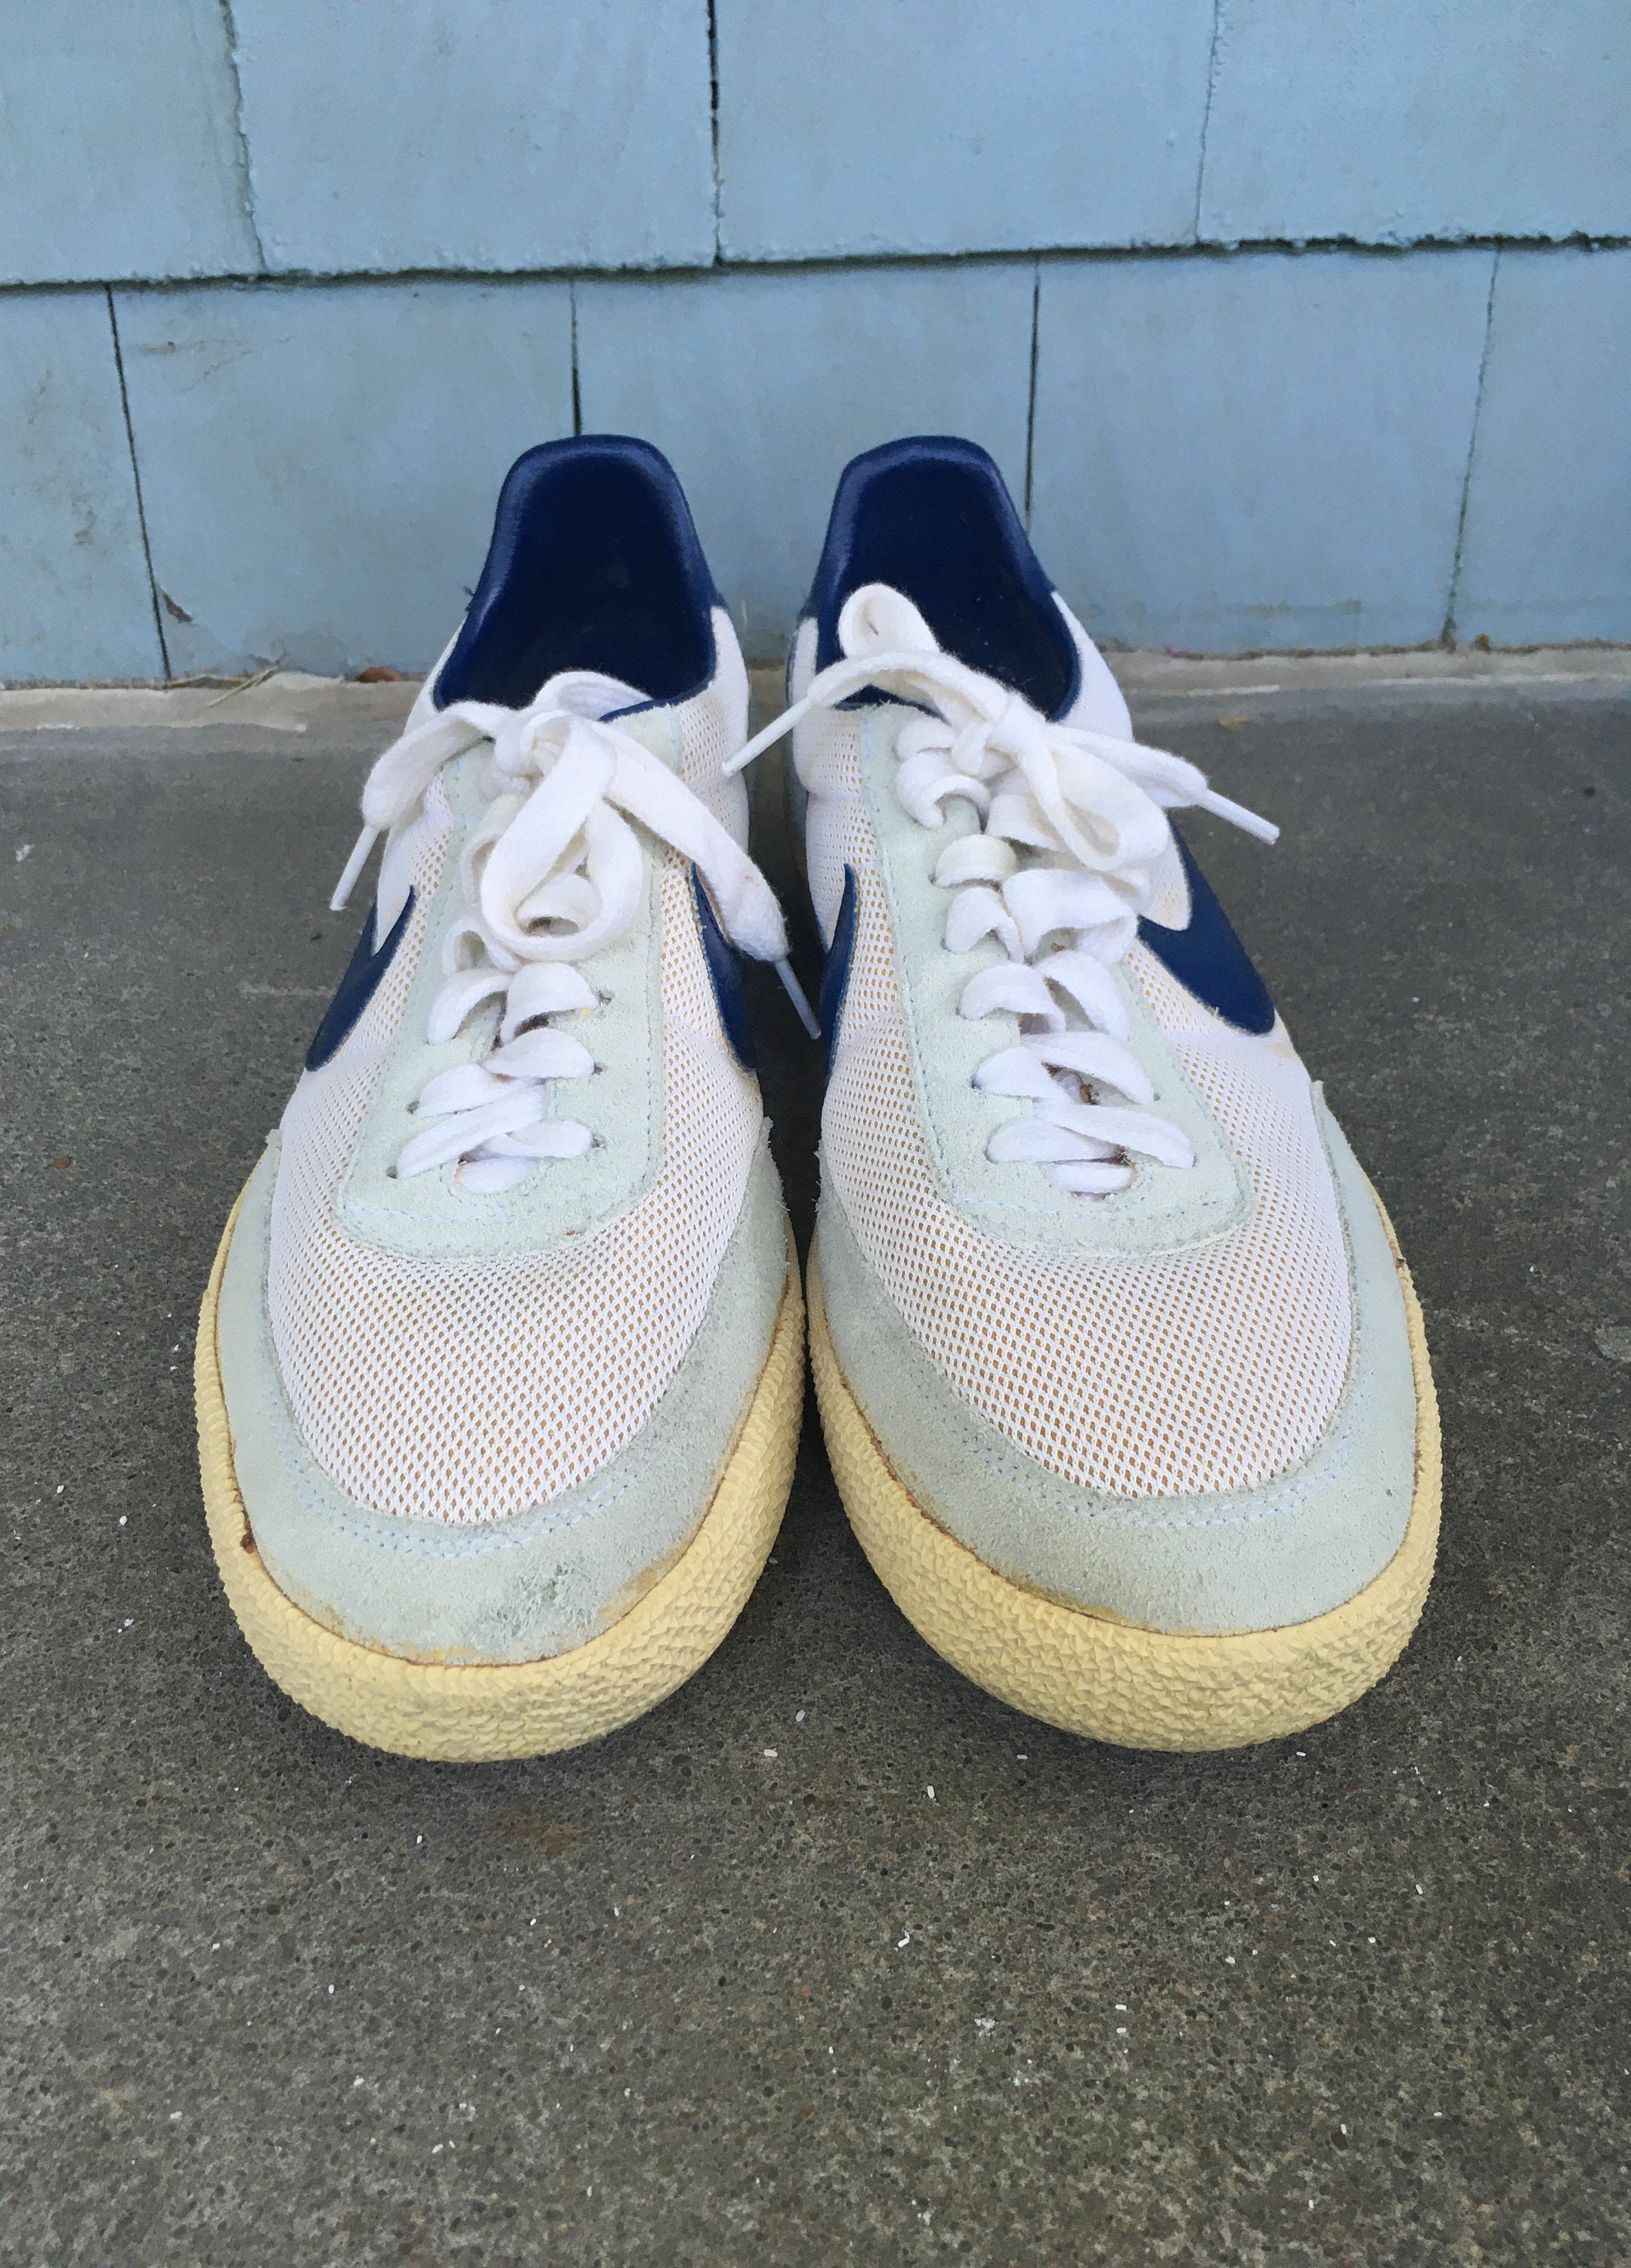 indebære glemsom sig selv Vintage 1980s NIKE KILLSHOT White & Blue SNEAKERS Tennis Shoes - Etsy